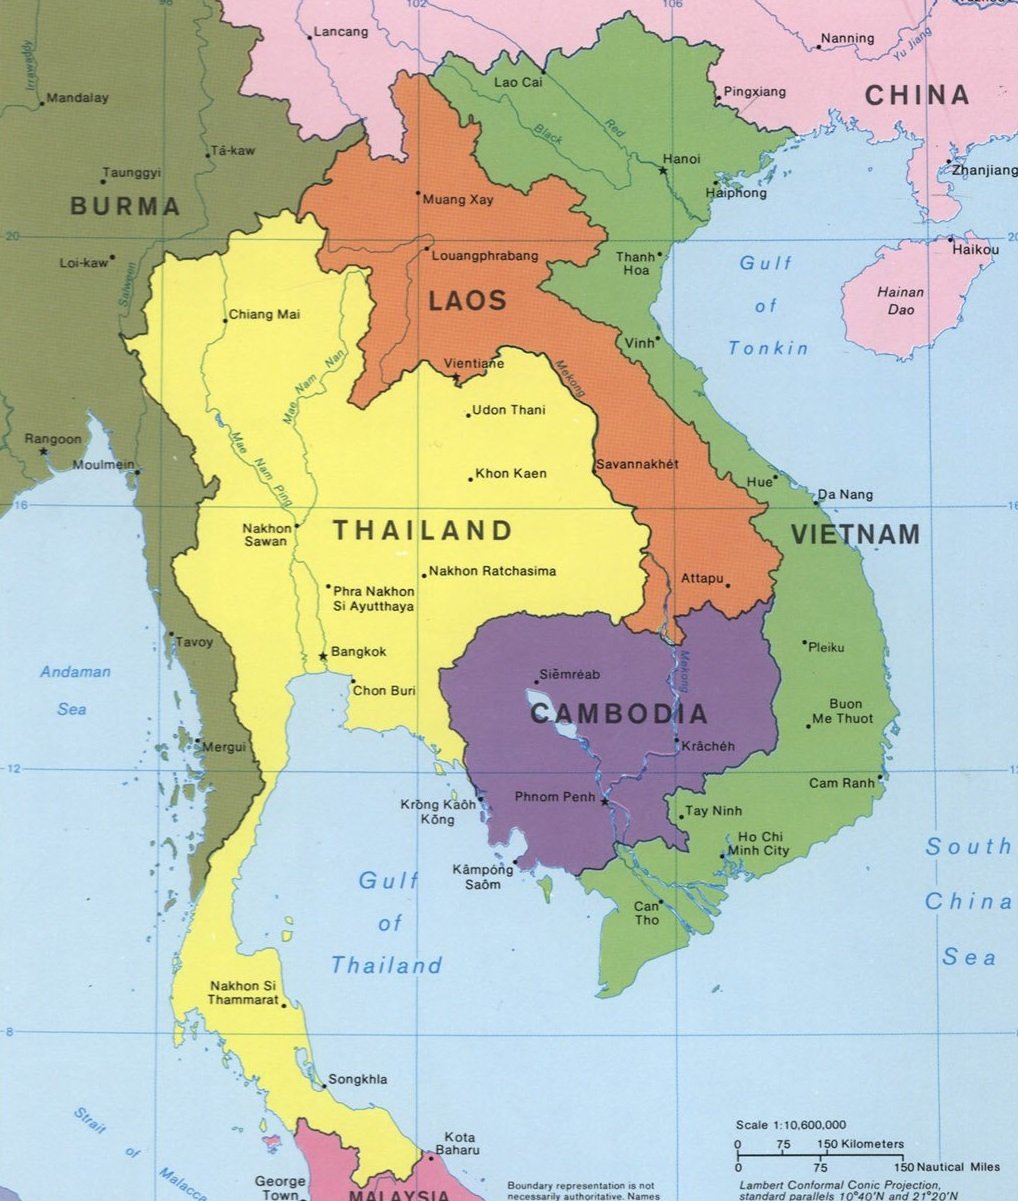 Thailand, Vietnam, and Cambodia